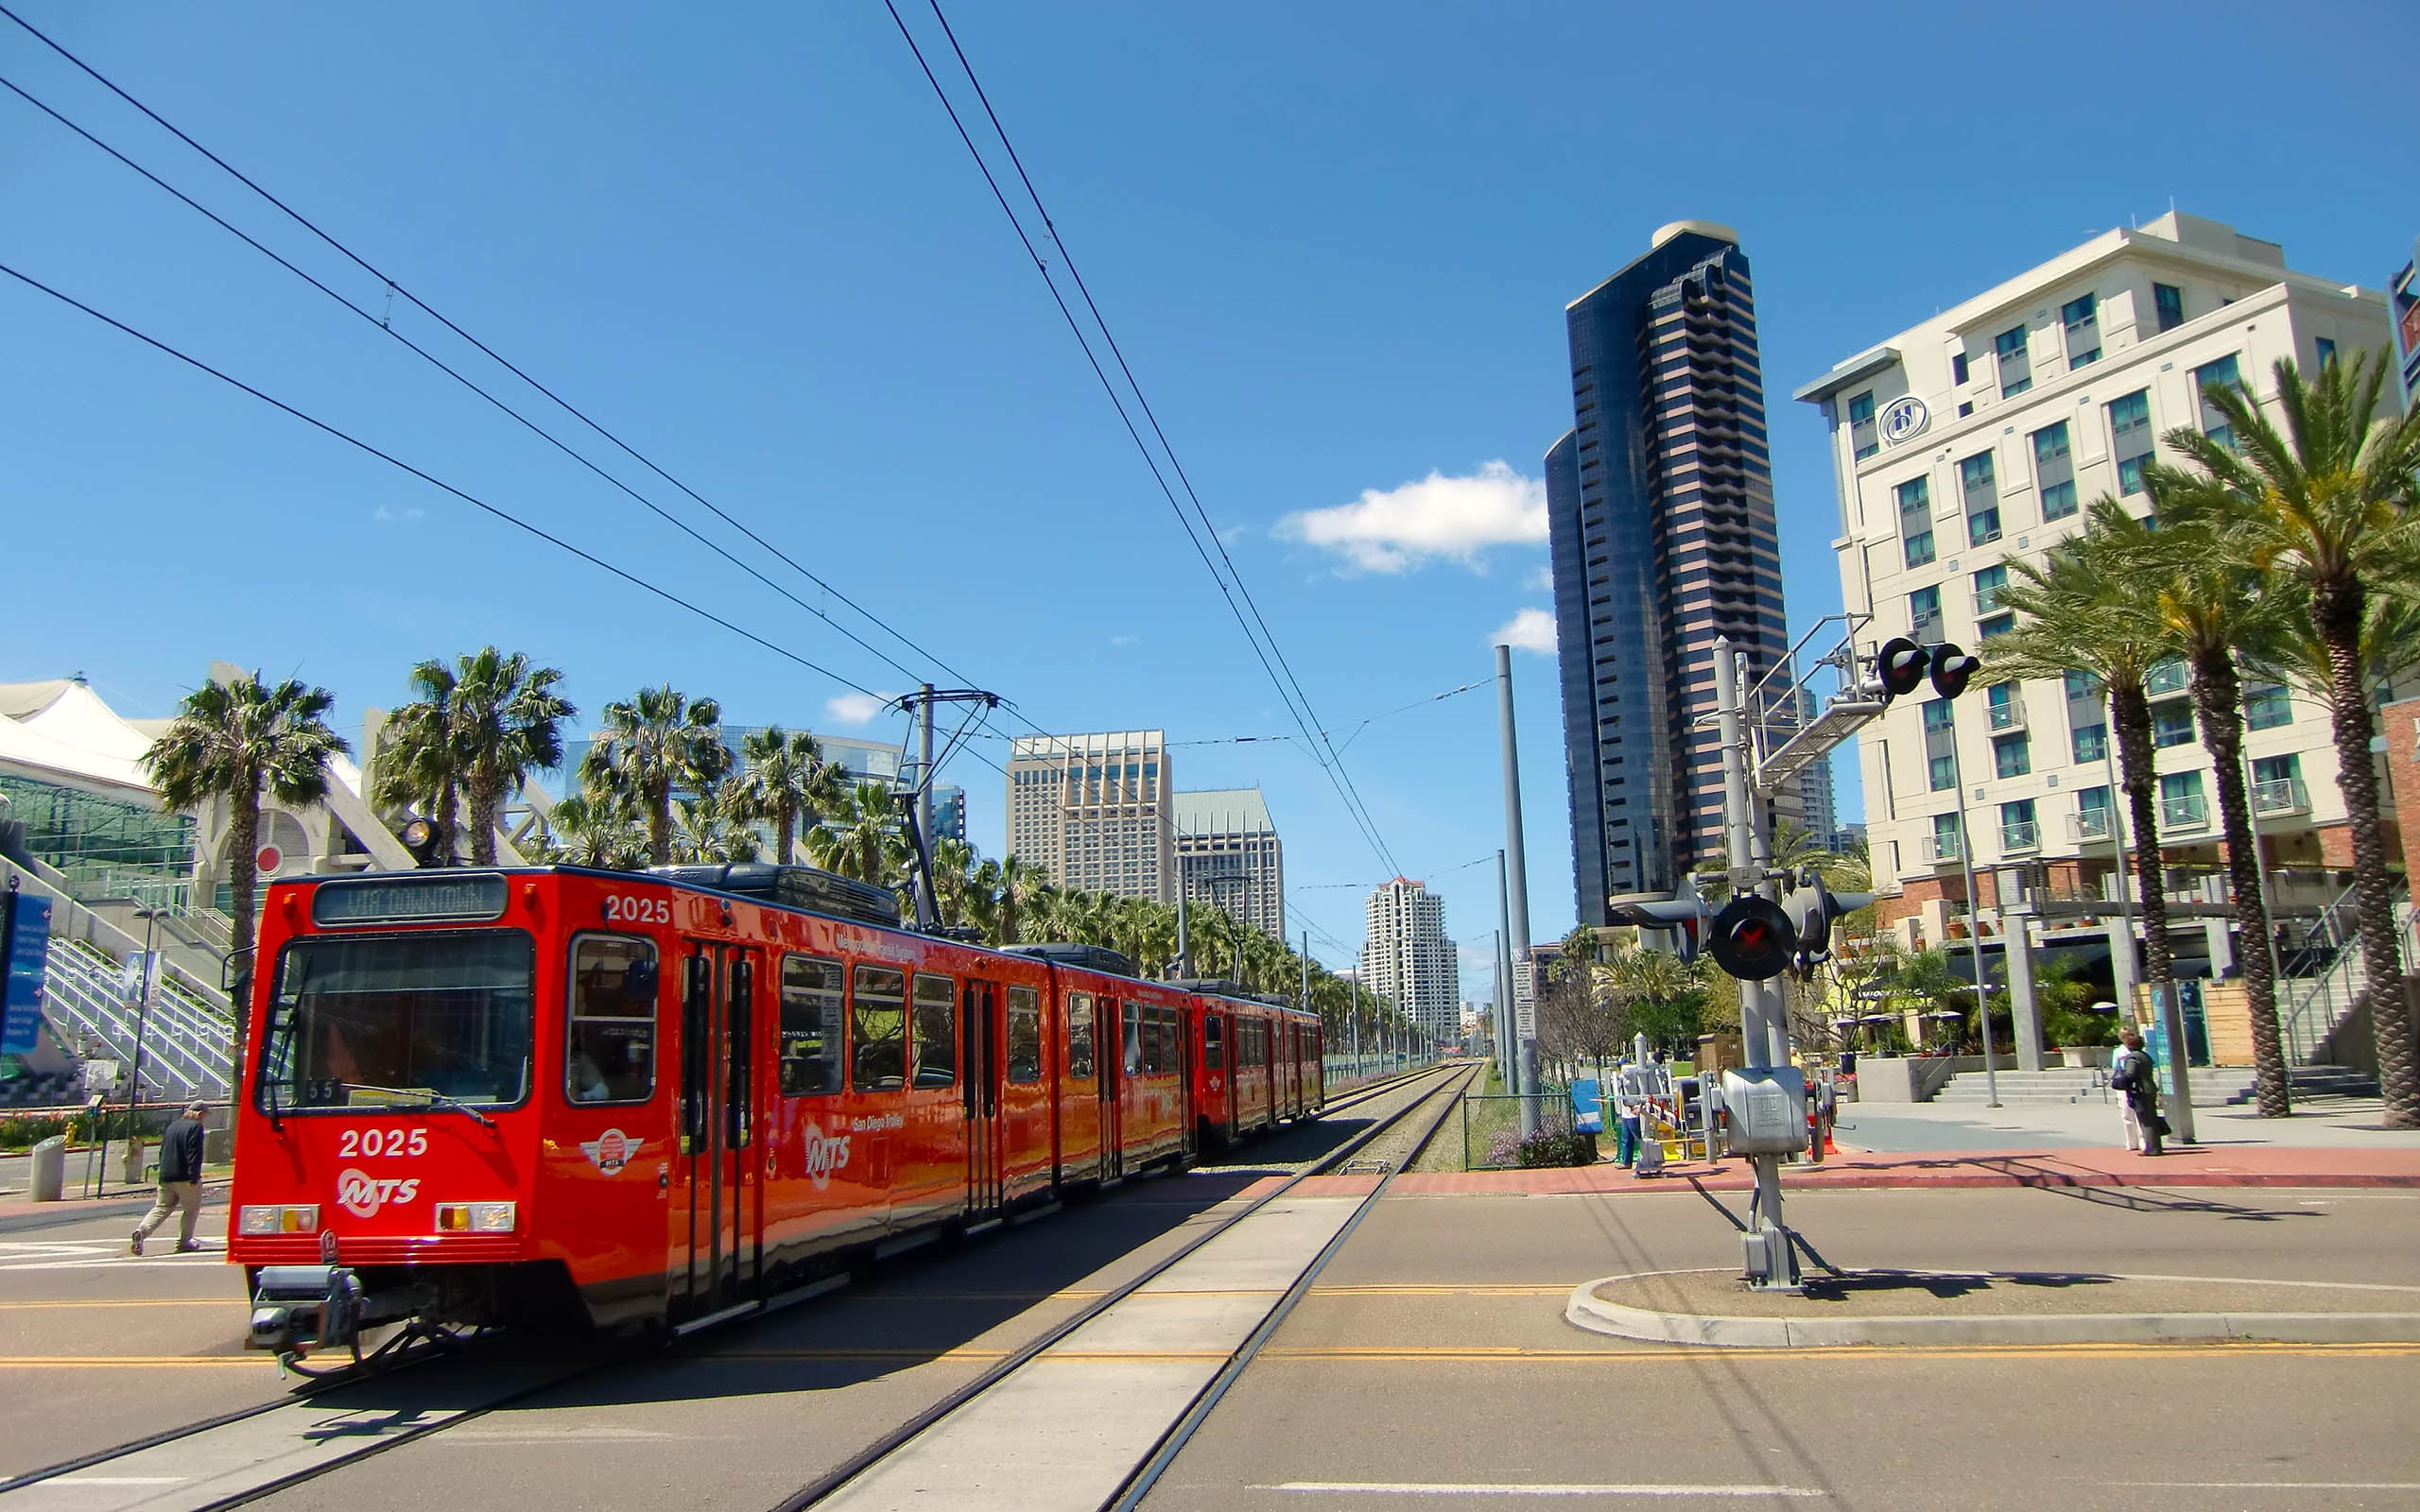 red tram, trolley, urban landscape, san diego, california, usa